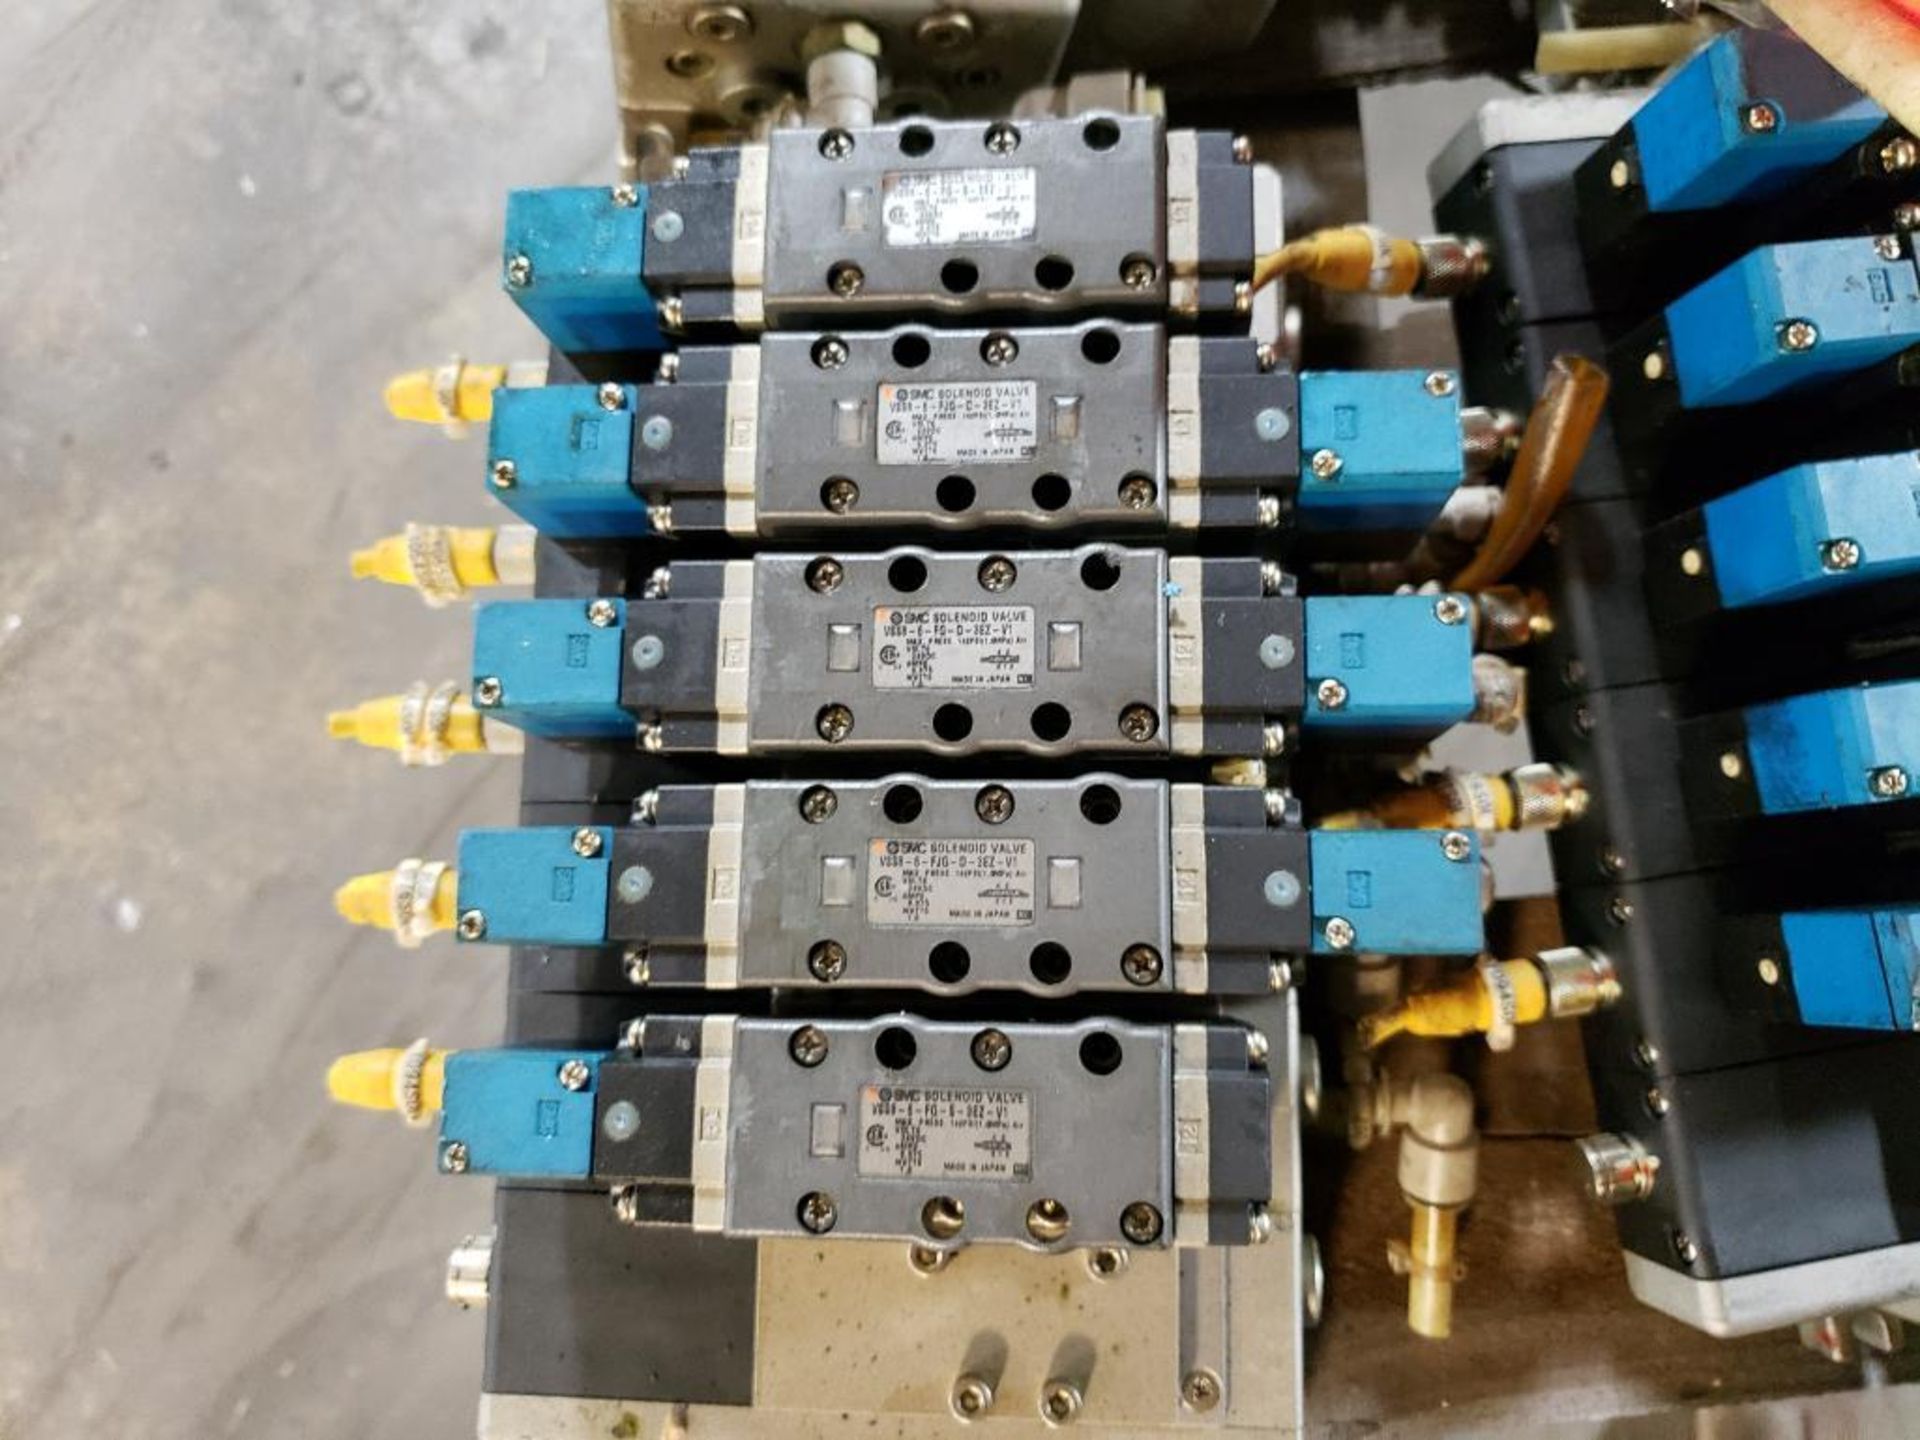 Qty 6 - SMC pneumatic valve assembly. - Image 5 of 9